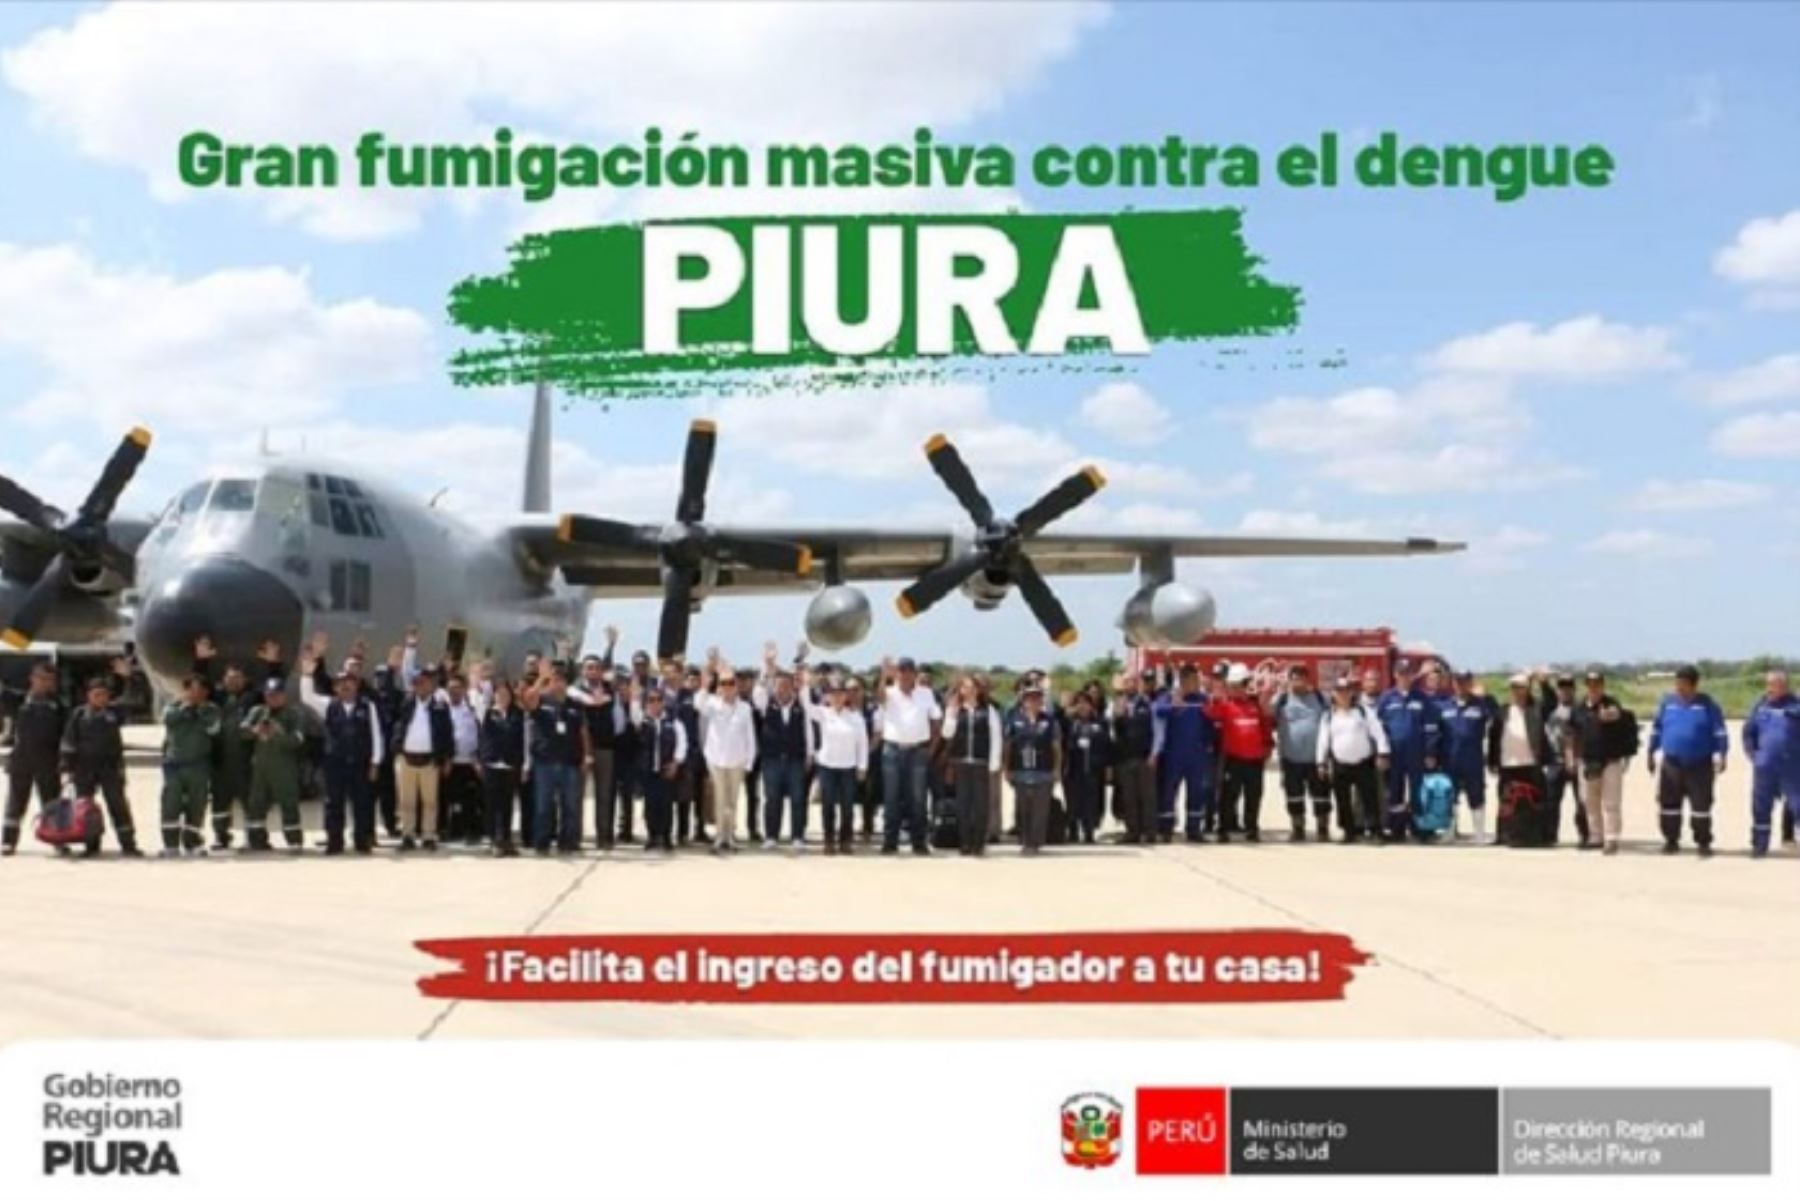 El gobernador regional Luis Neyra León invoca a la población de Chulucanas a sumarse a esta lucha contra la enfermedad abriendo las puertas de sus hogares a los fumigadores.